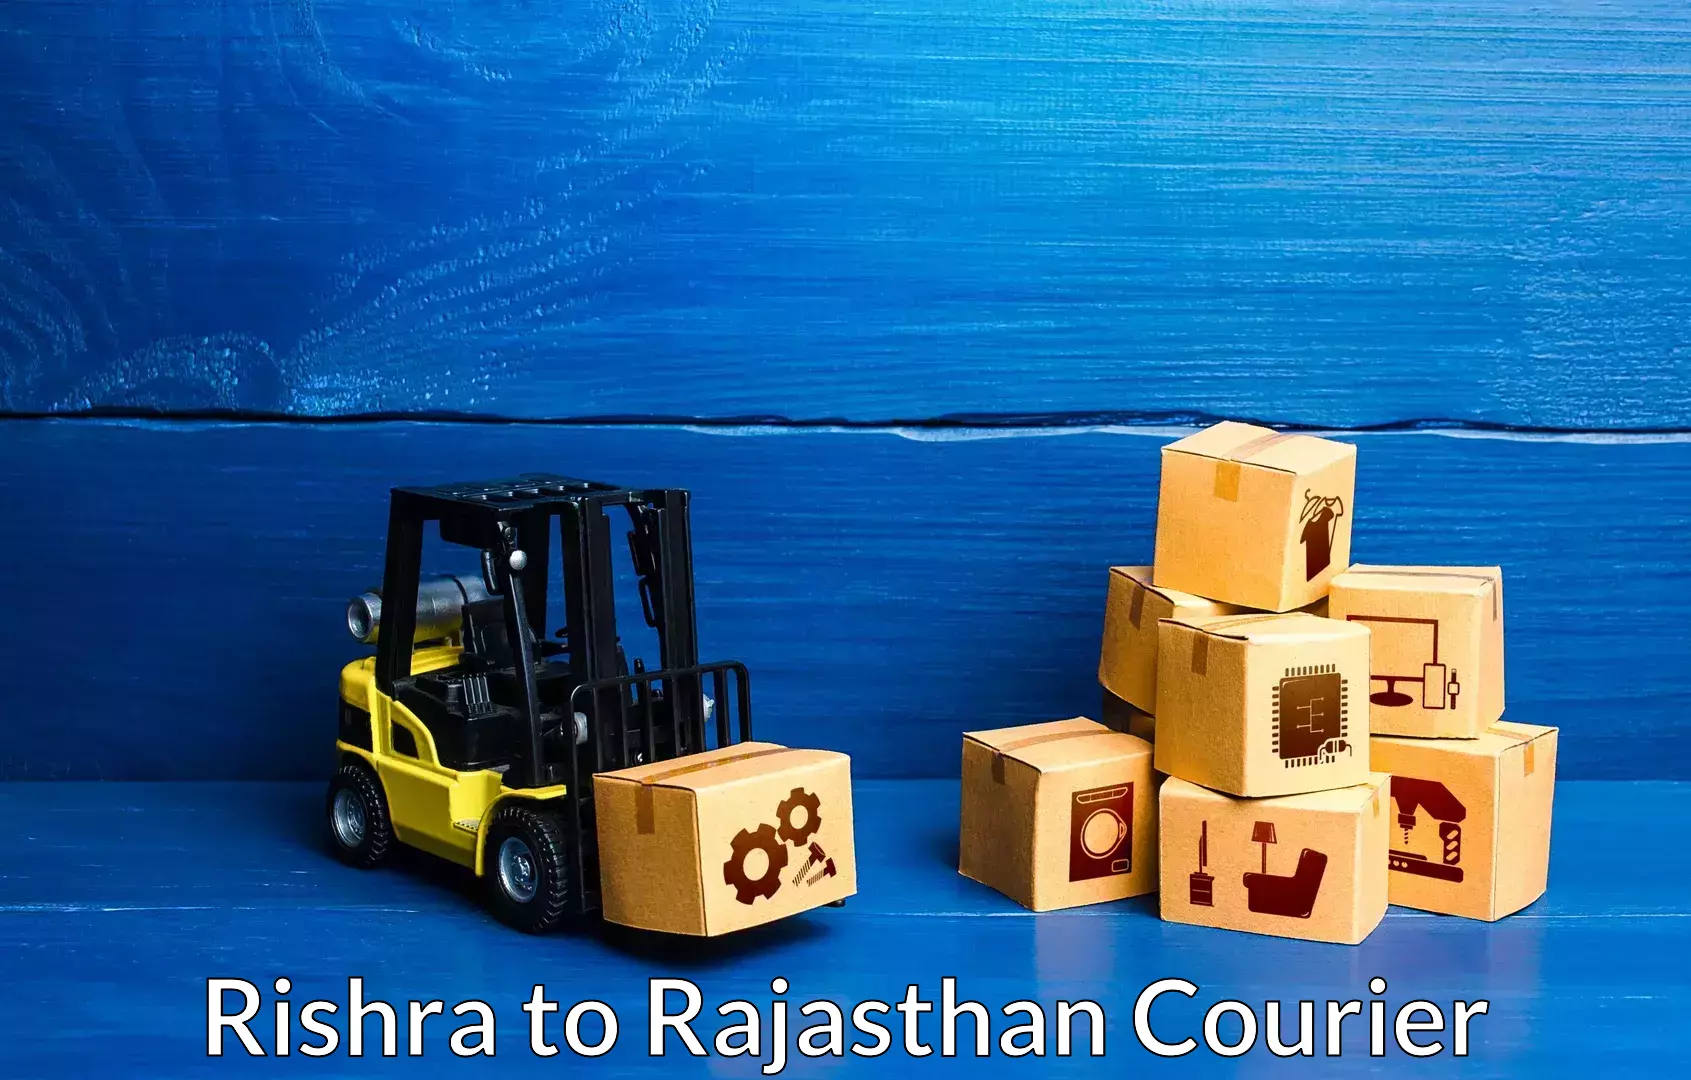 Professional moving company Rishra to Suratgarh